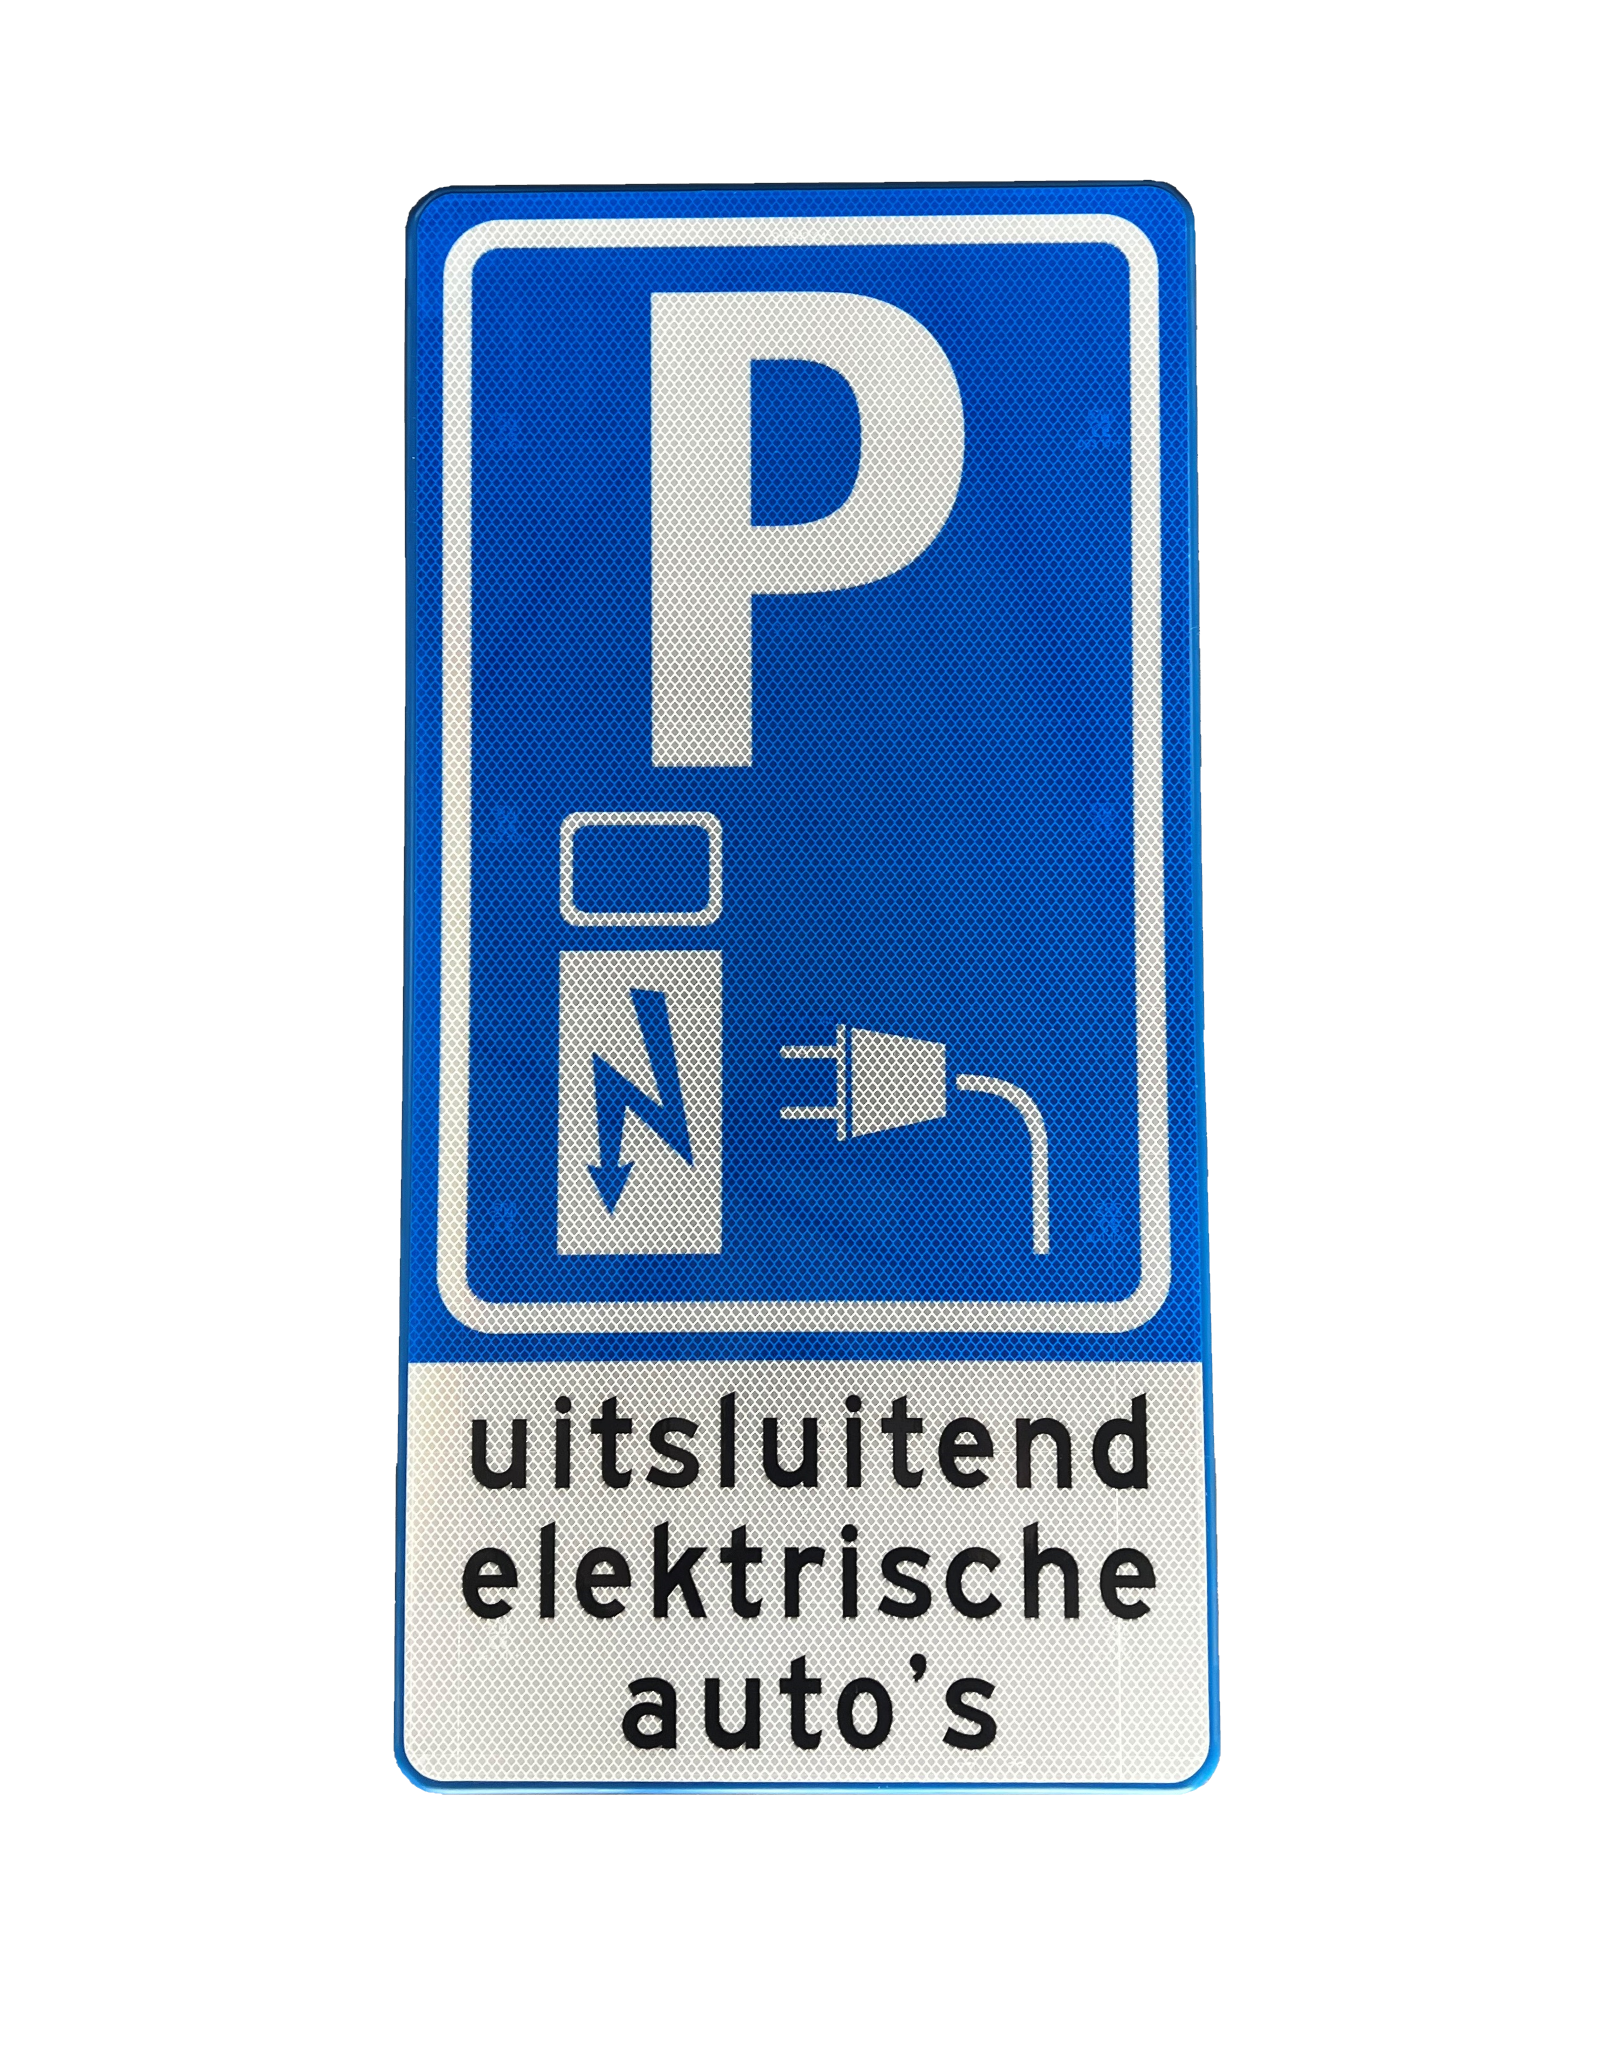 Verkeersbord E08o, uitsluitend elektrische auto's,  80 x 40 cm